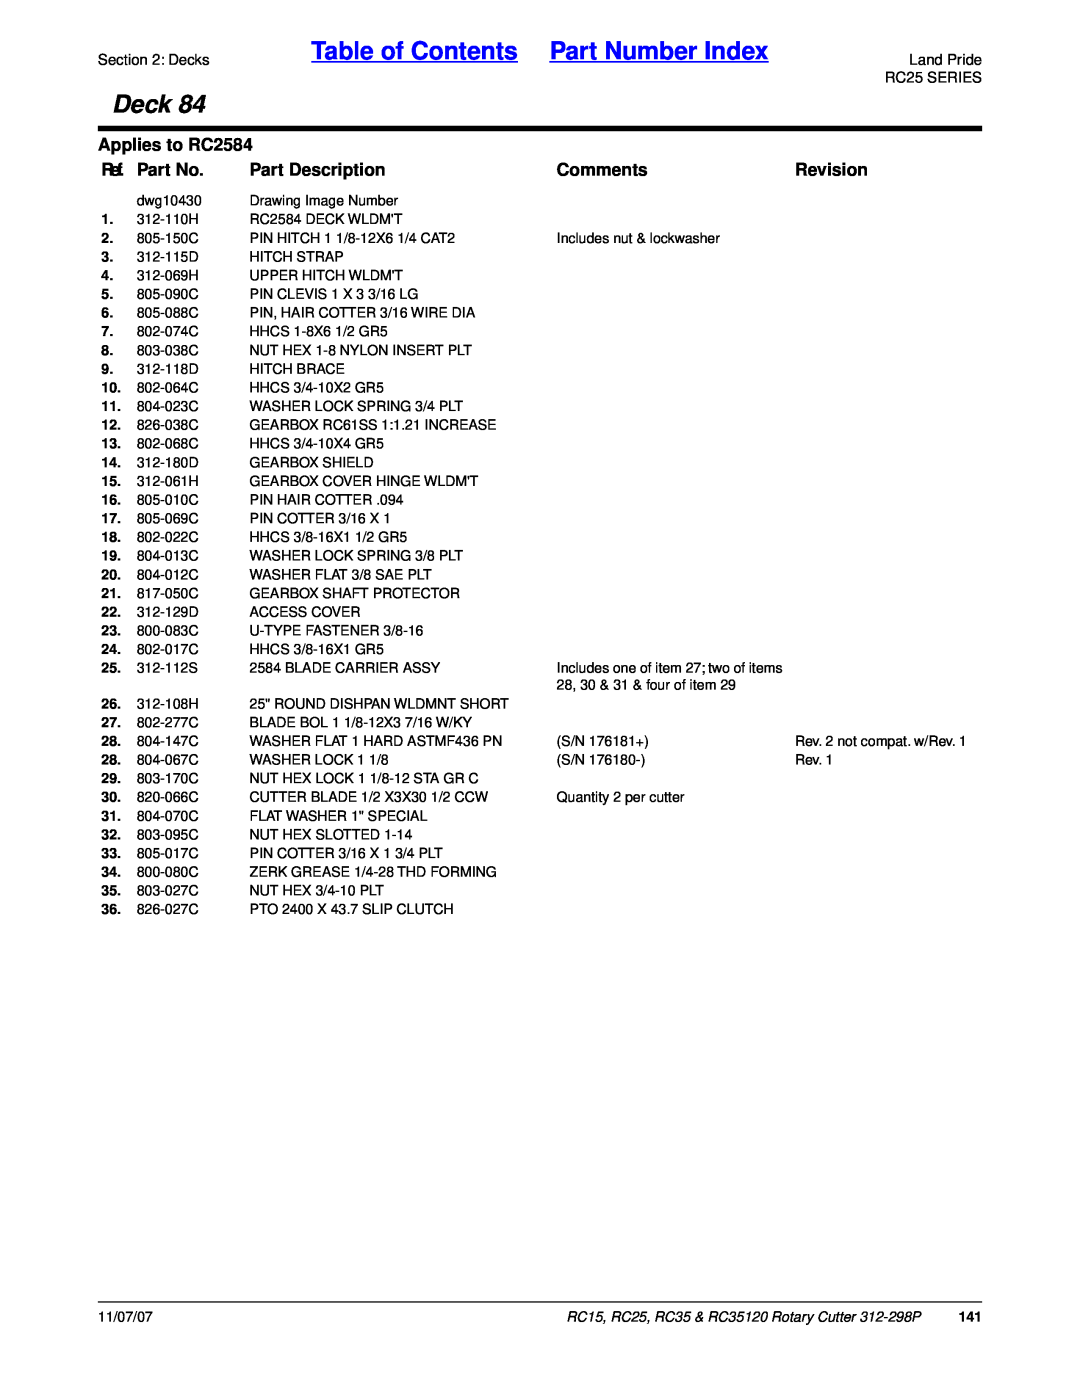 Land Pride RC35 Table of Contents Part Number Index, Deck, Applies to RC2584, Ref. Part No, Part Description, Comments 